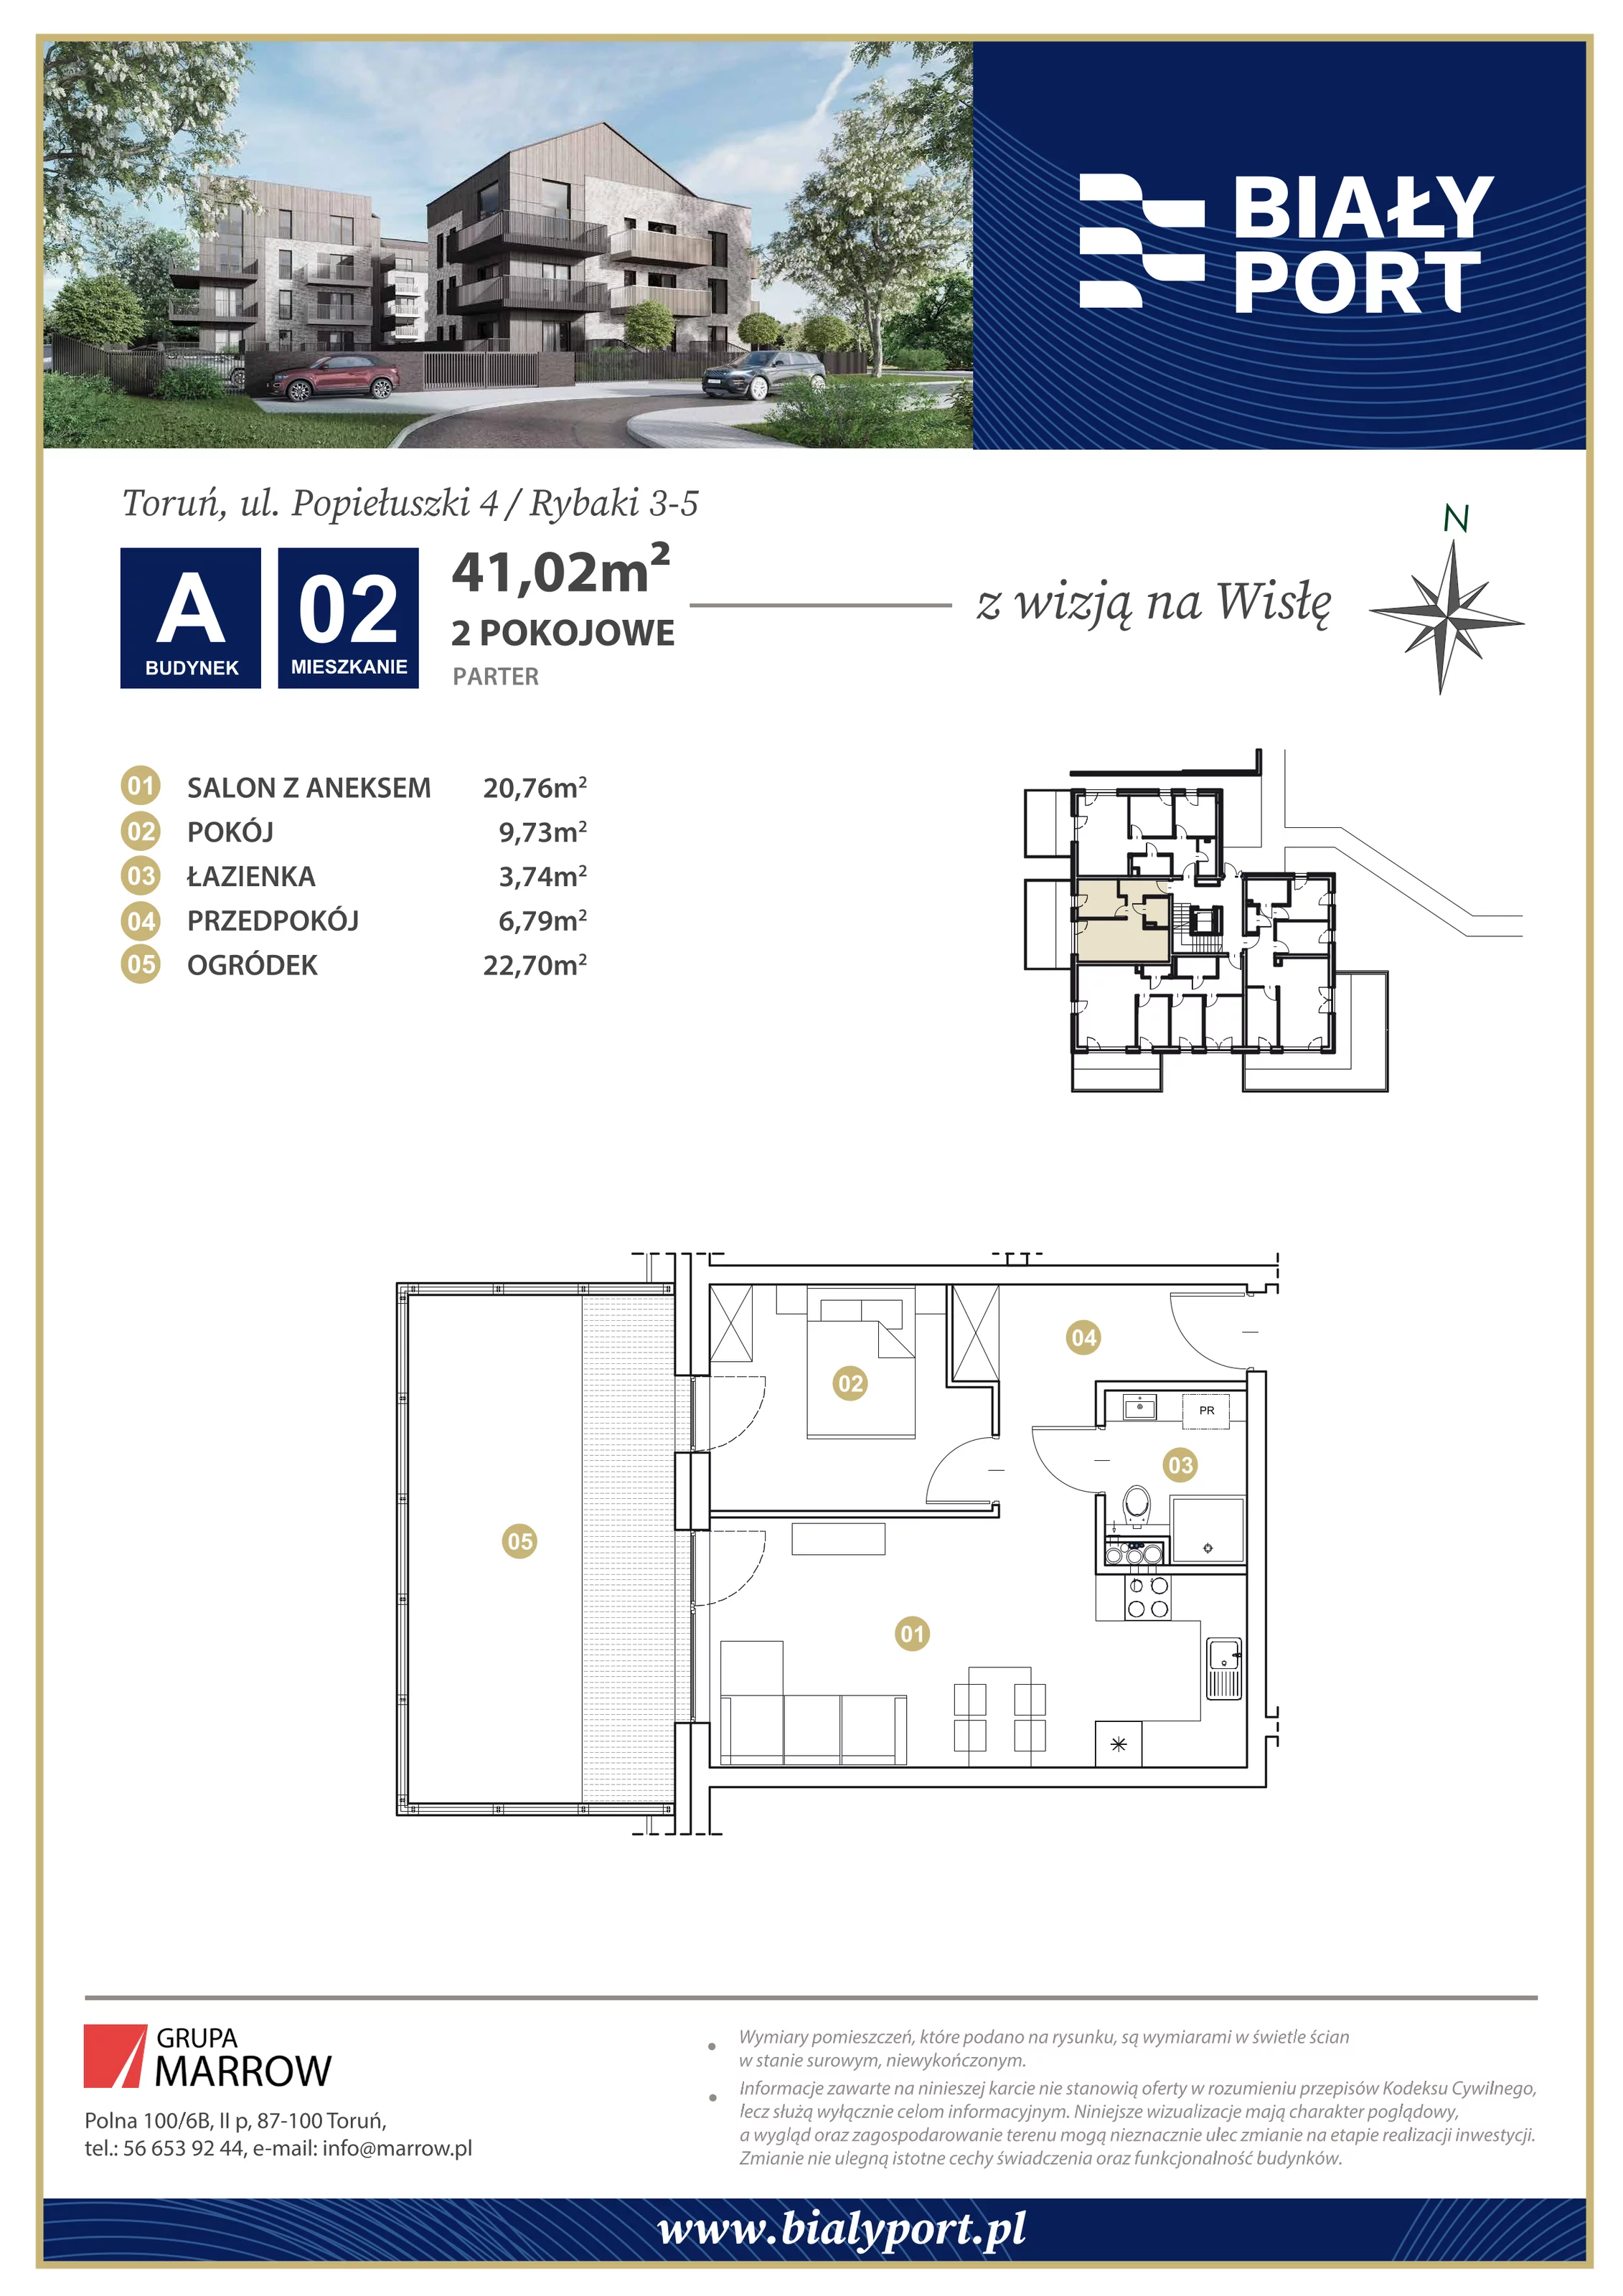 Mieszkanie 41,02 m², parter, oferta nr 2, Biały Port, Toruń, Rybaki, ul. Popiełuszki 4